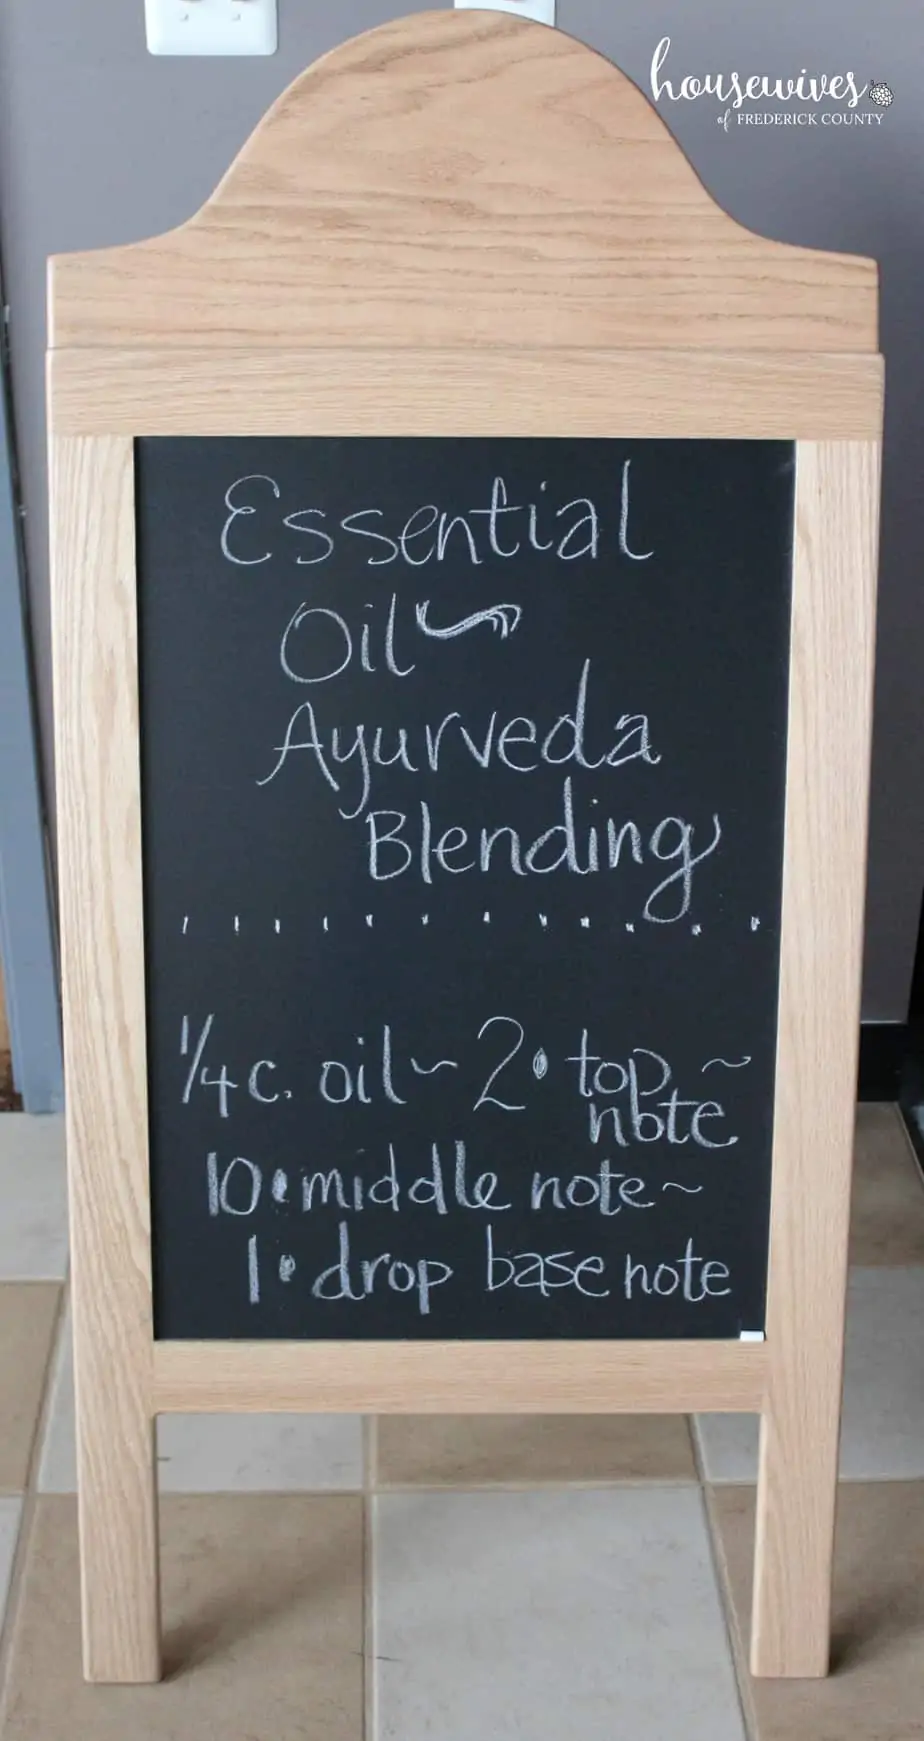 Blending essential oils for Abhyanga